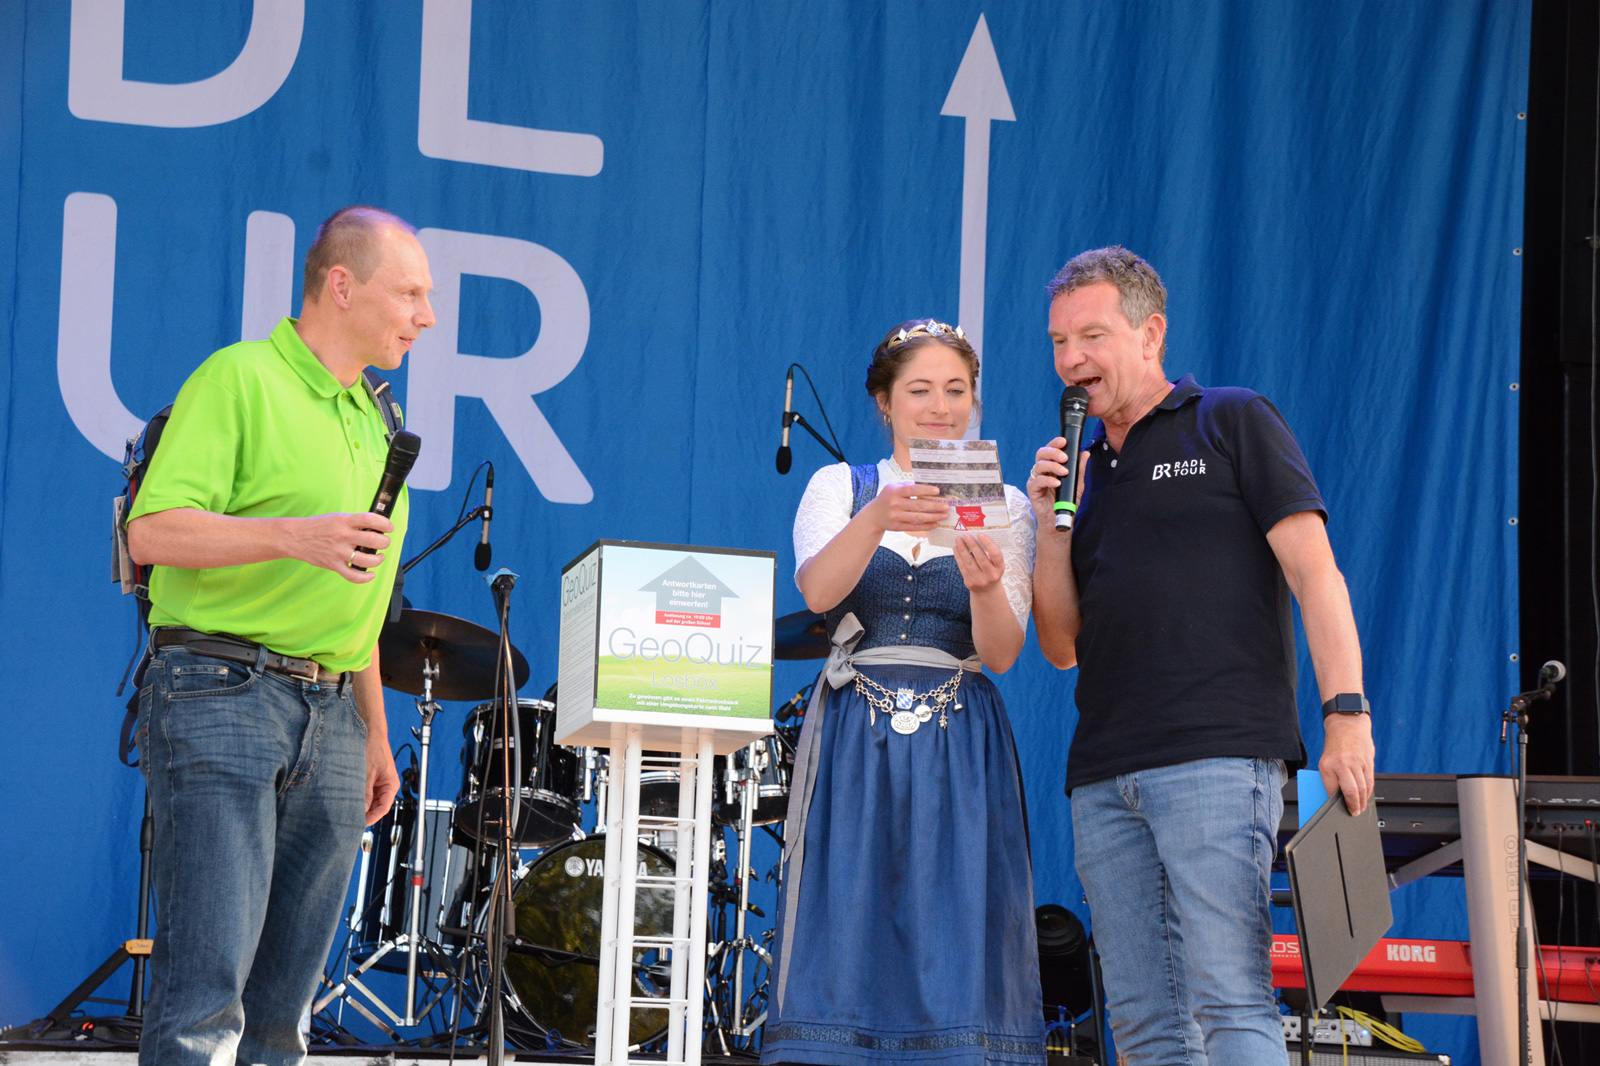 v. l. n. r.: LDBV-Präsident Daniel Kleffel, gemeinsam mit der Bayerischen Bierkönigin Mona Sommer und dem Moderator Roman Roell (BR) auf der BR-Bühne bei der Verkündung der Gewinnerin oder des Gewinners des GeoQuiz